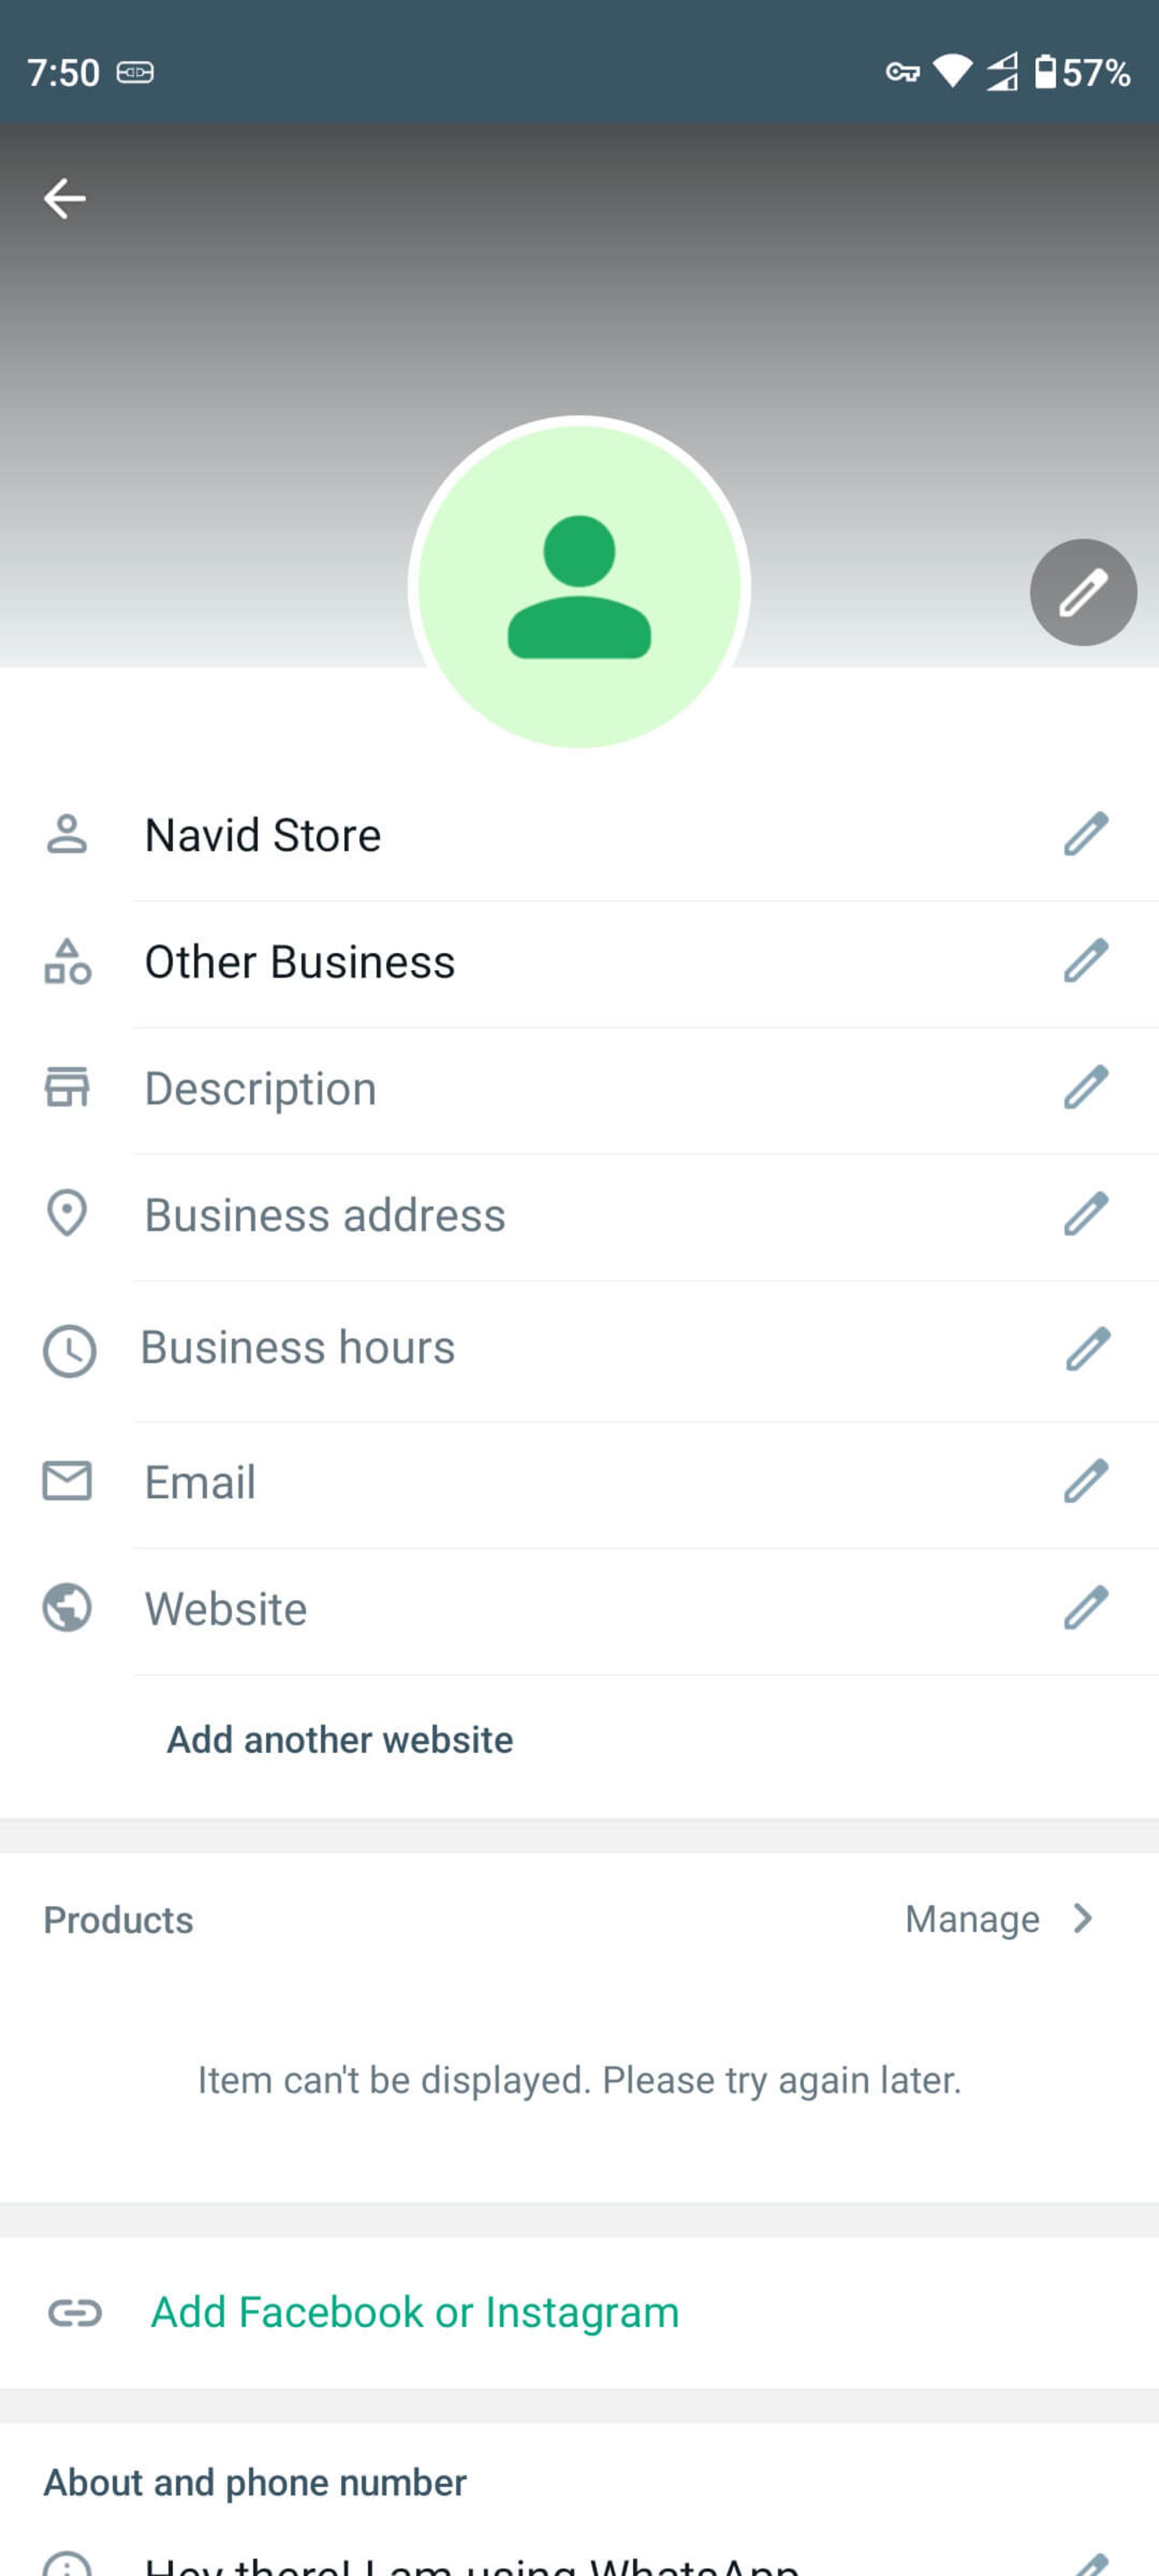 صفحه پروفایل تجاری (Business Profile) در واتساپ بیزینس